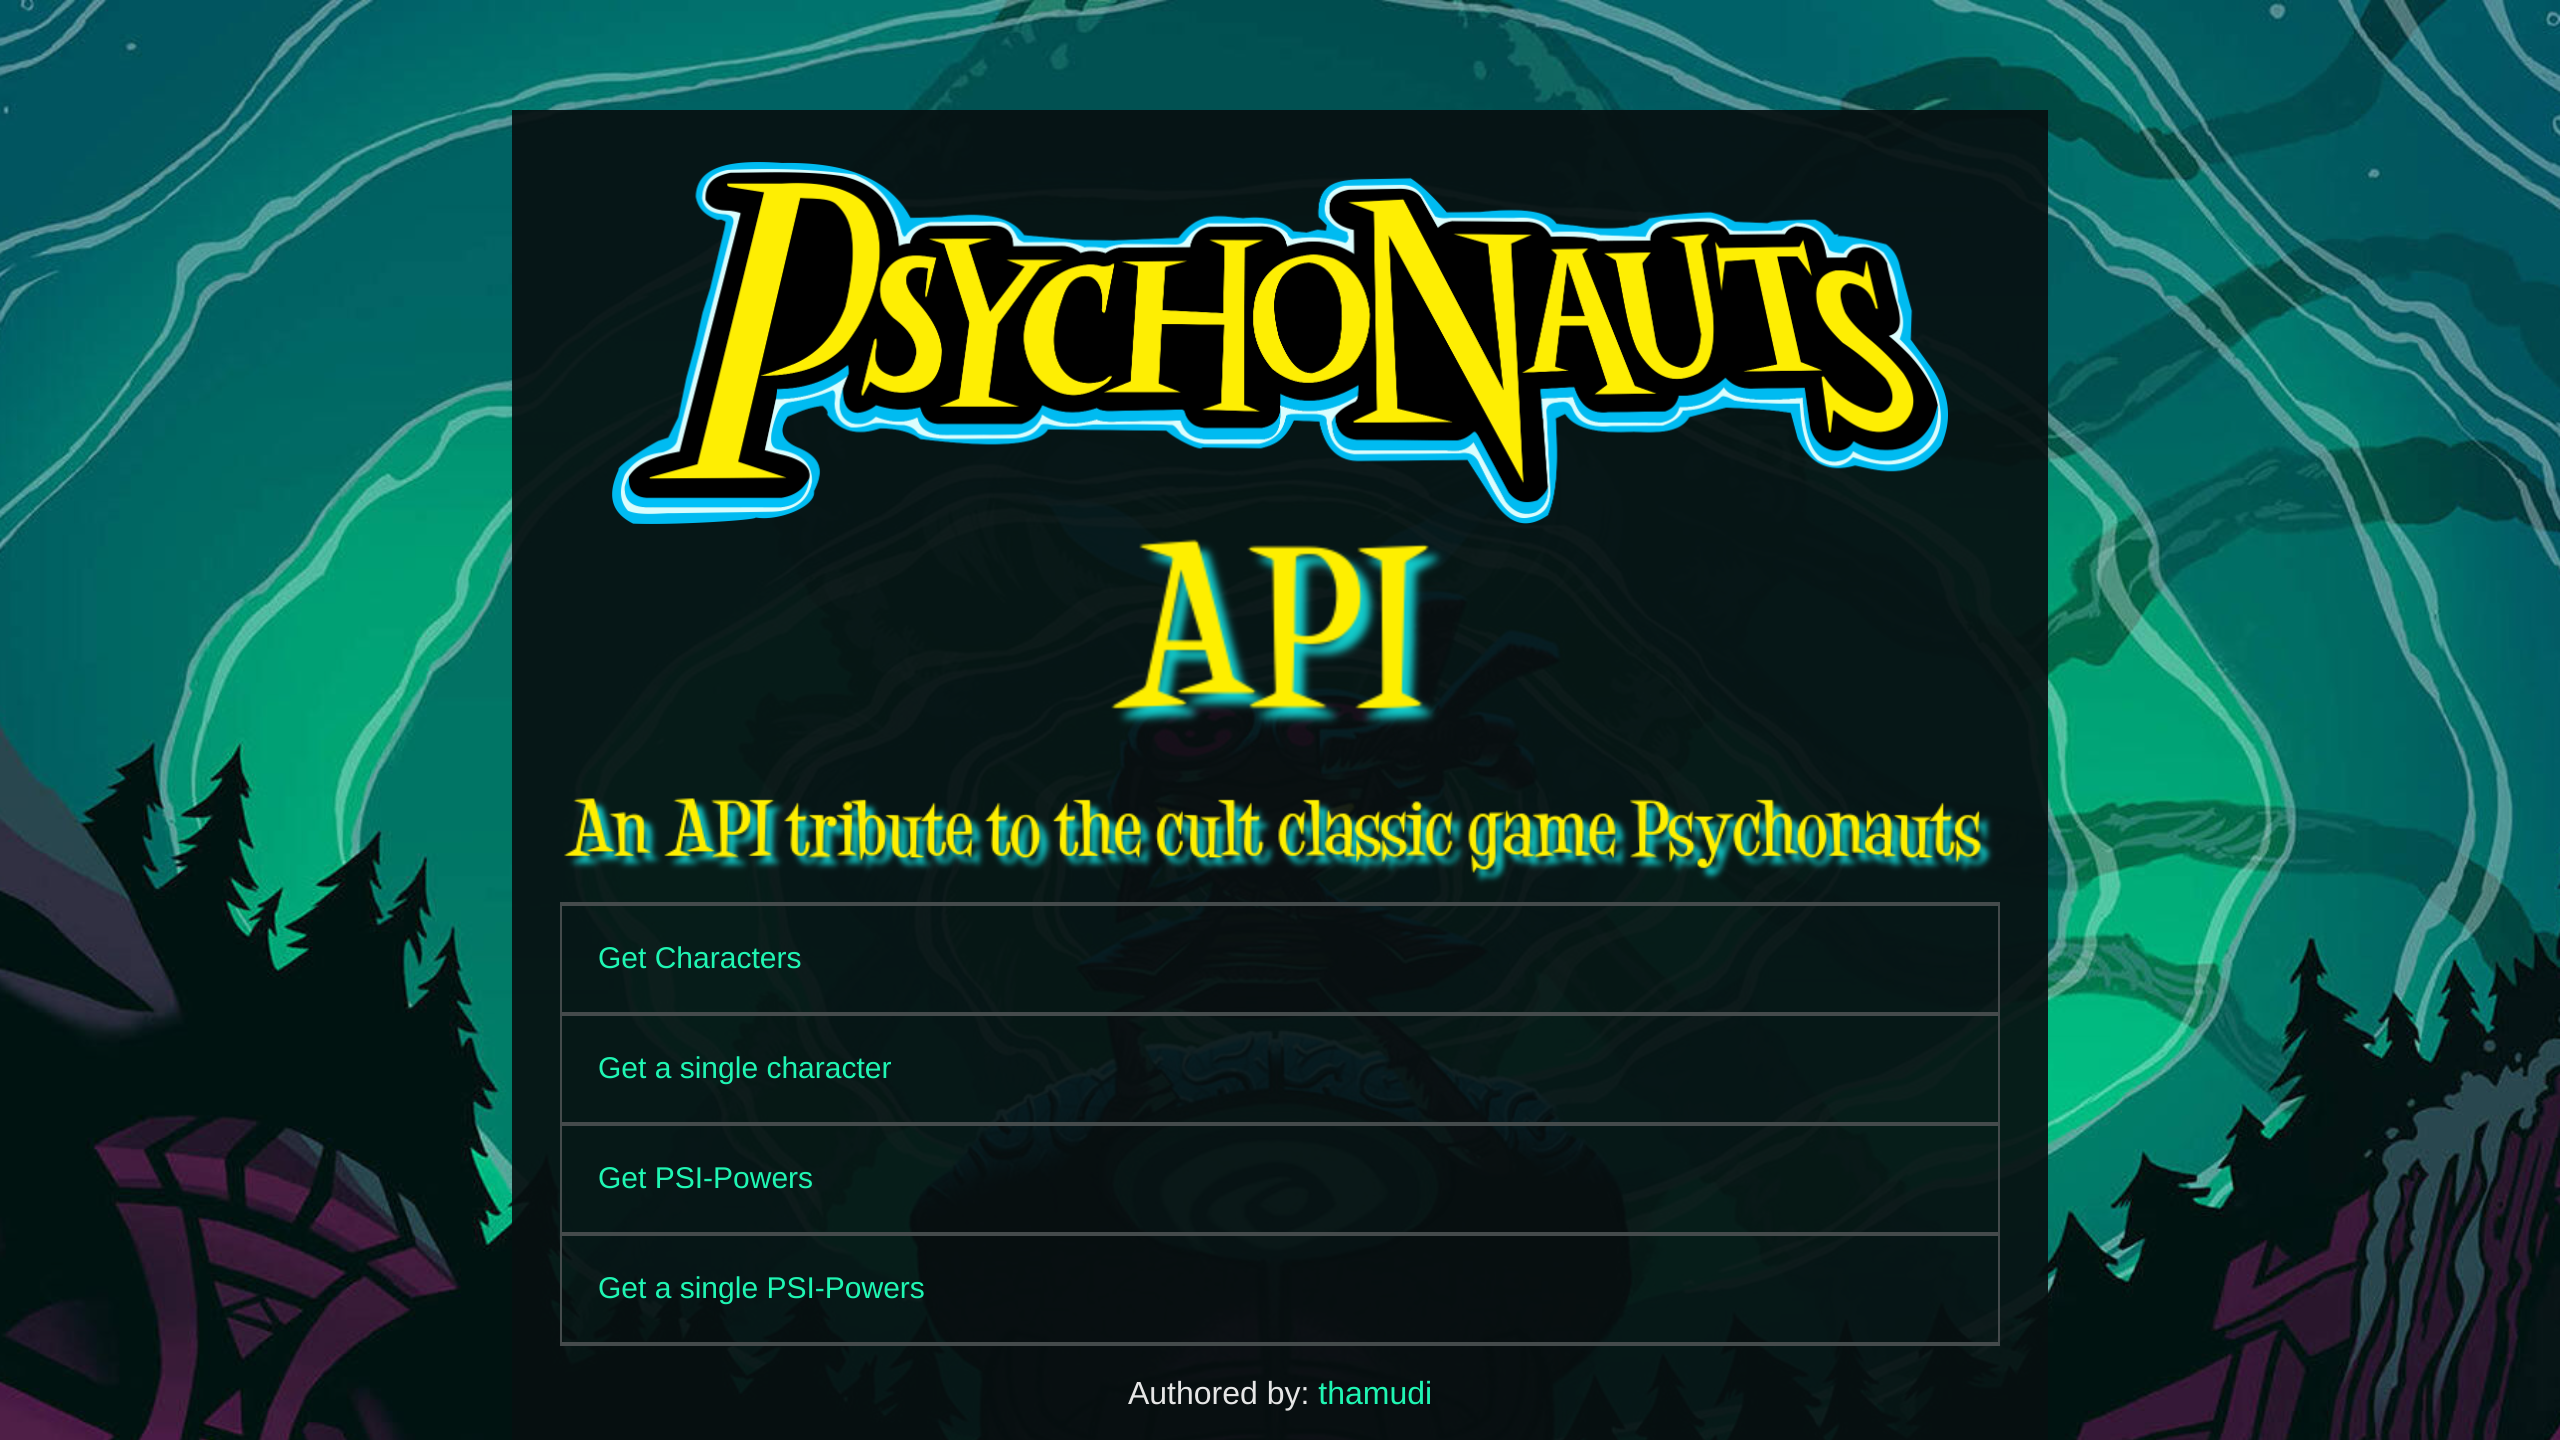 Psychonauts's website screenshot